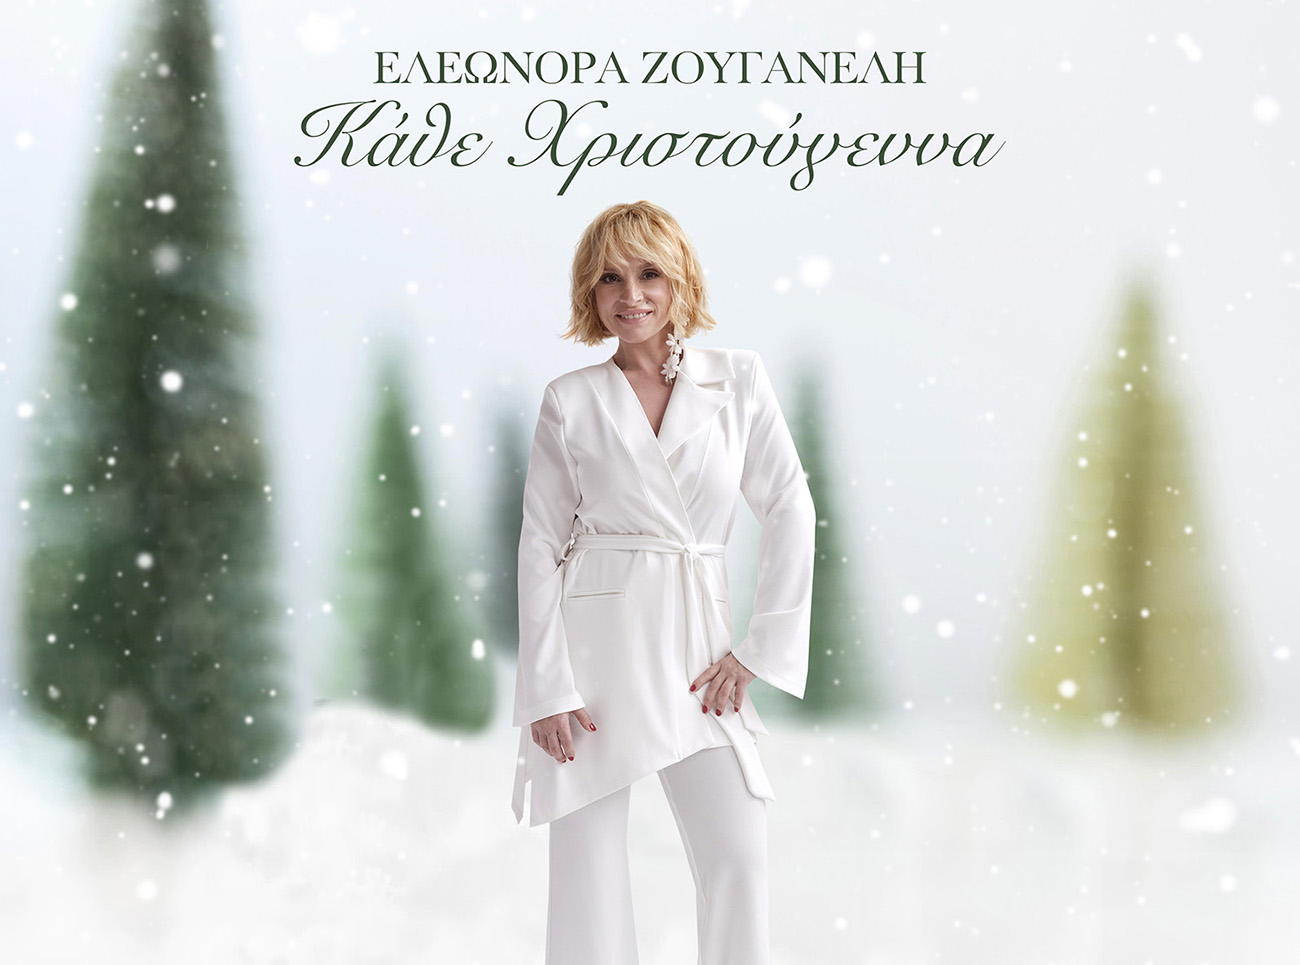 Ελεωνόρα Ζουγανέλη: Το χριστουγεννιάτικο τραγούδι με την υπογραφή του Θέμη Καραμουρατίδη